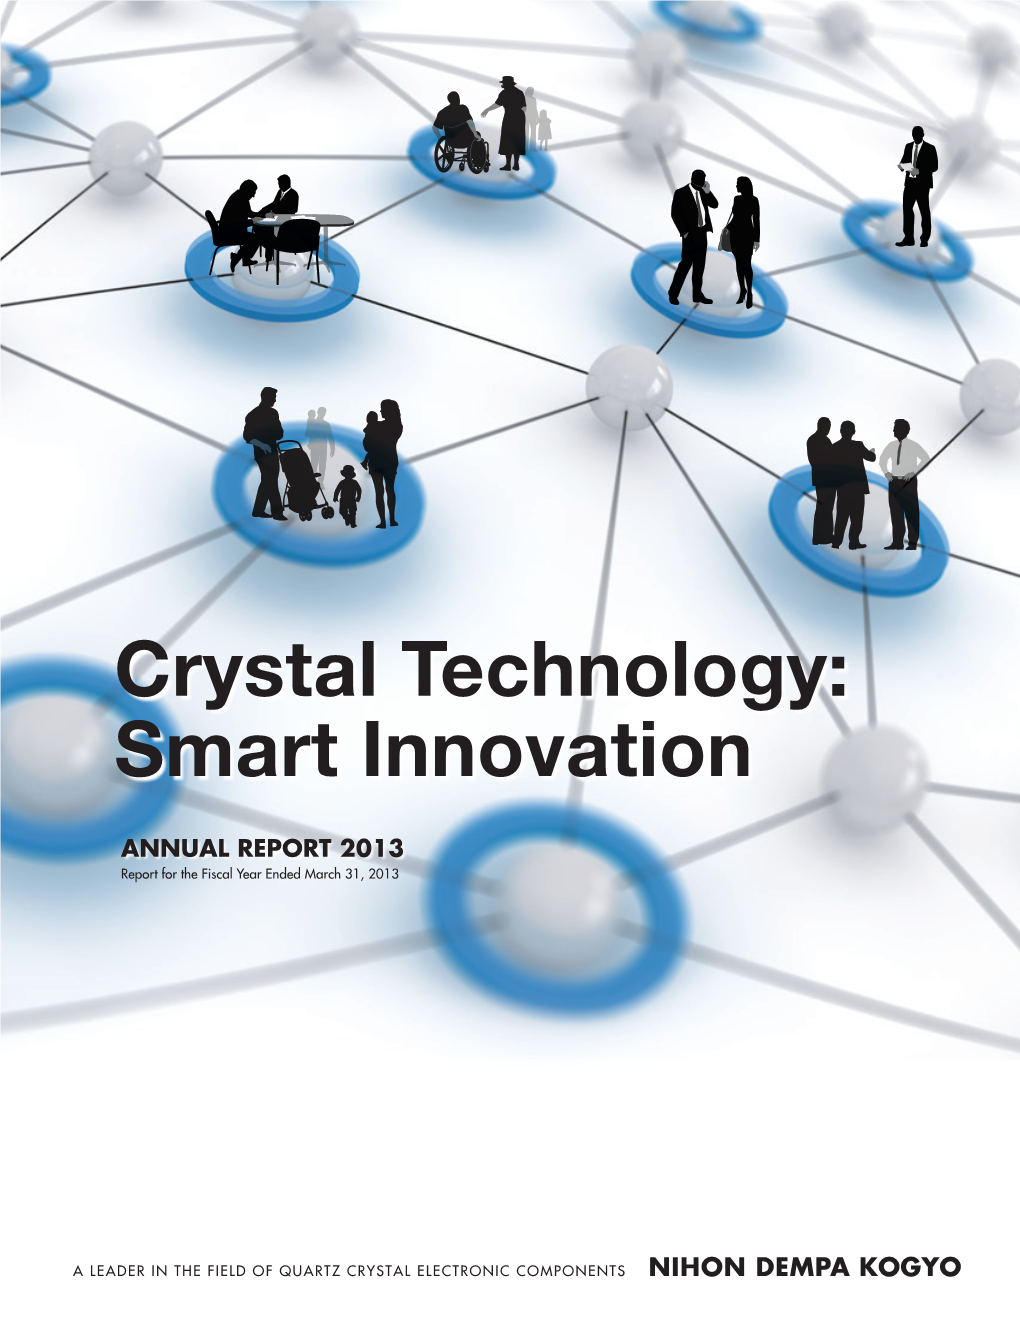 Crystal Technology: Smart Innovation